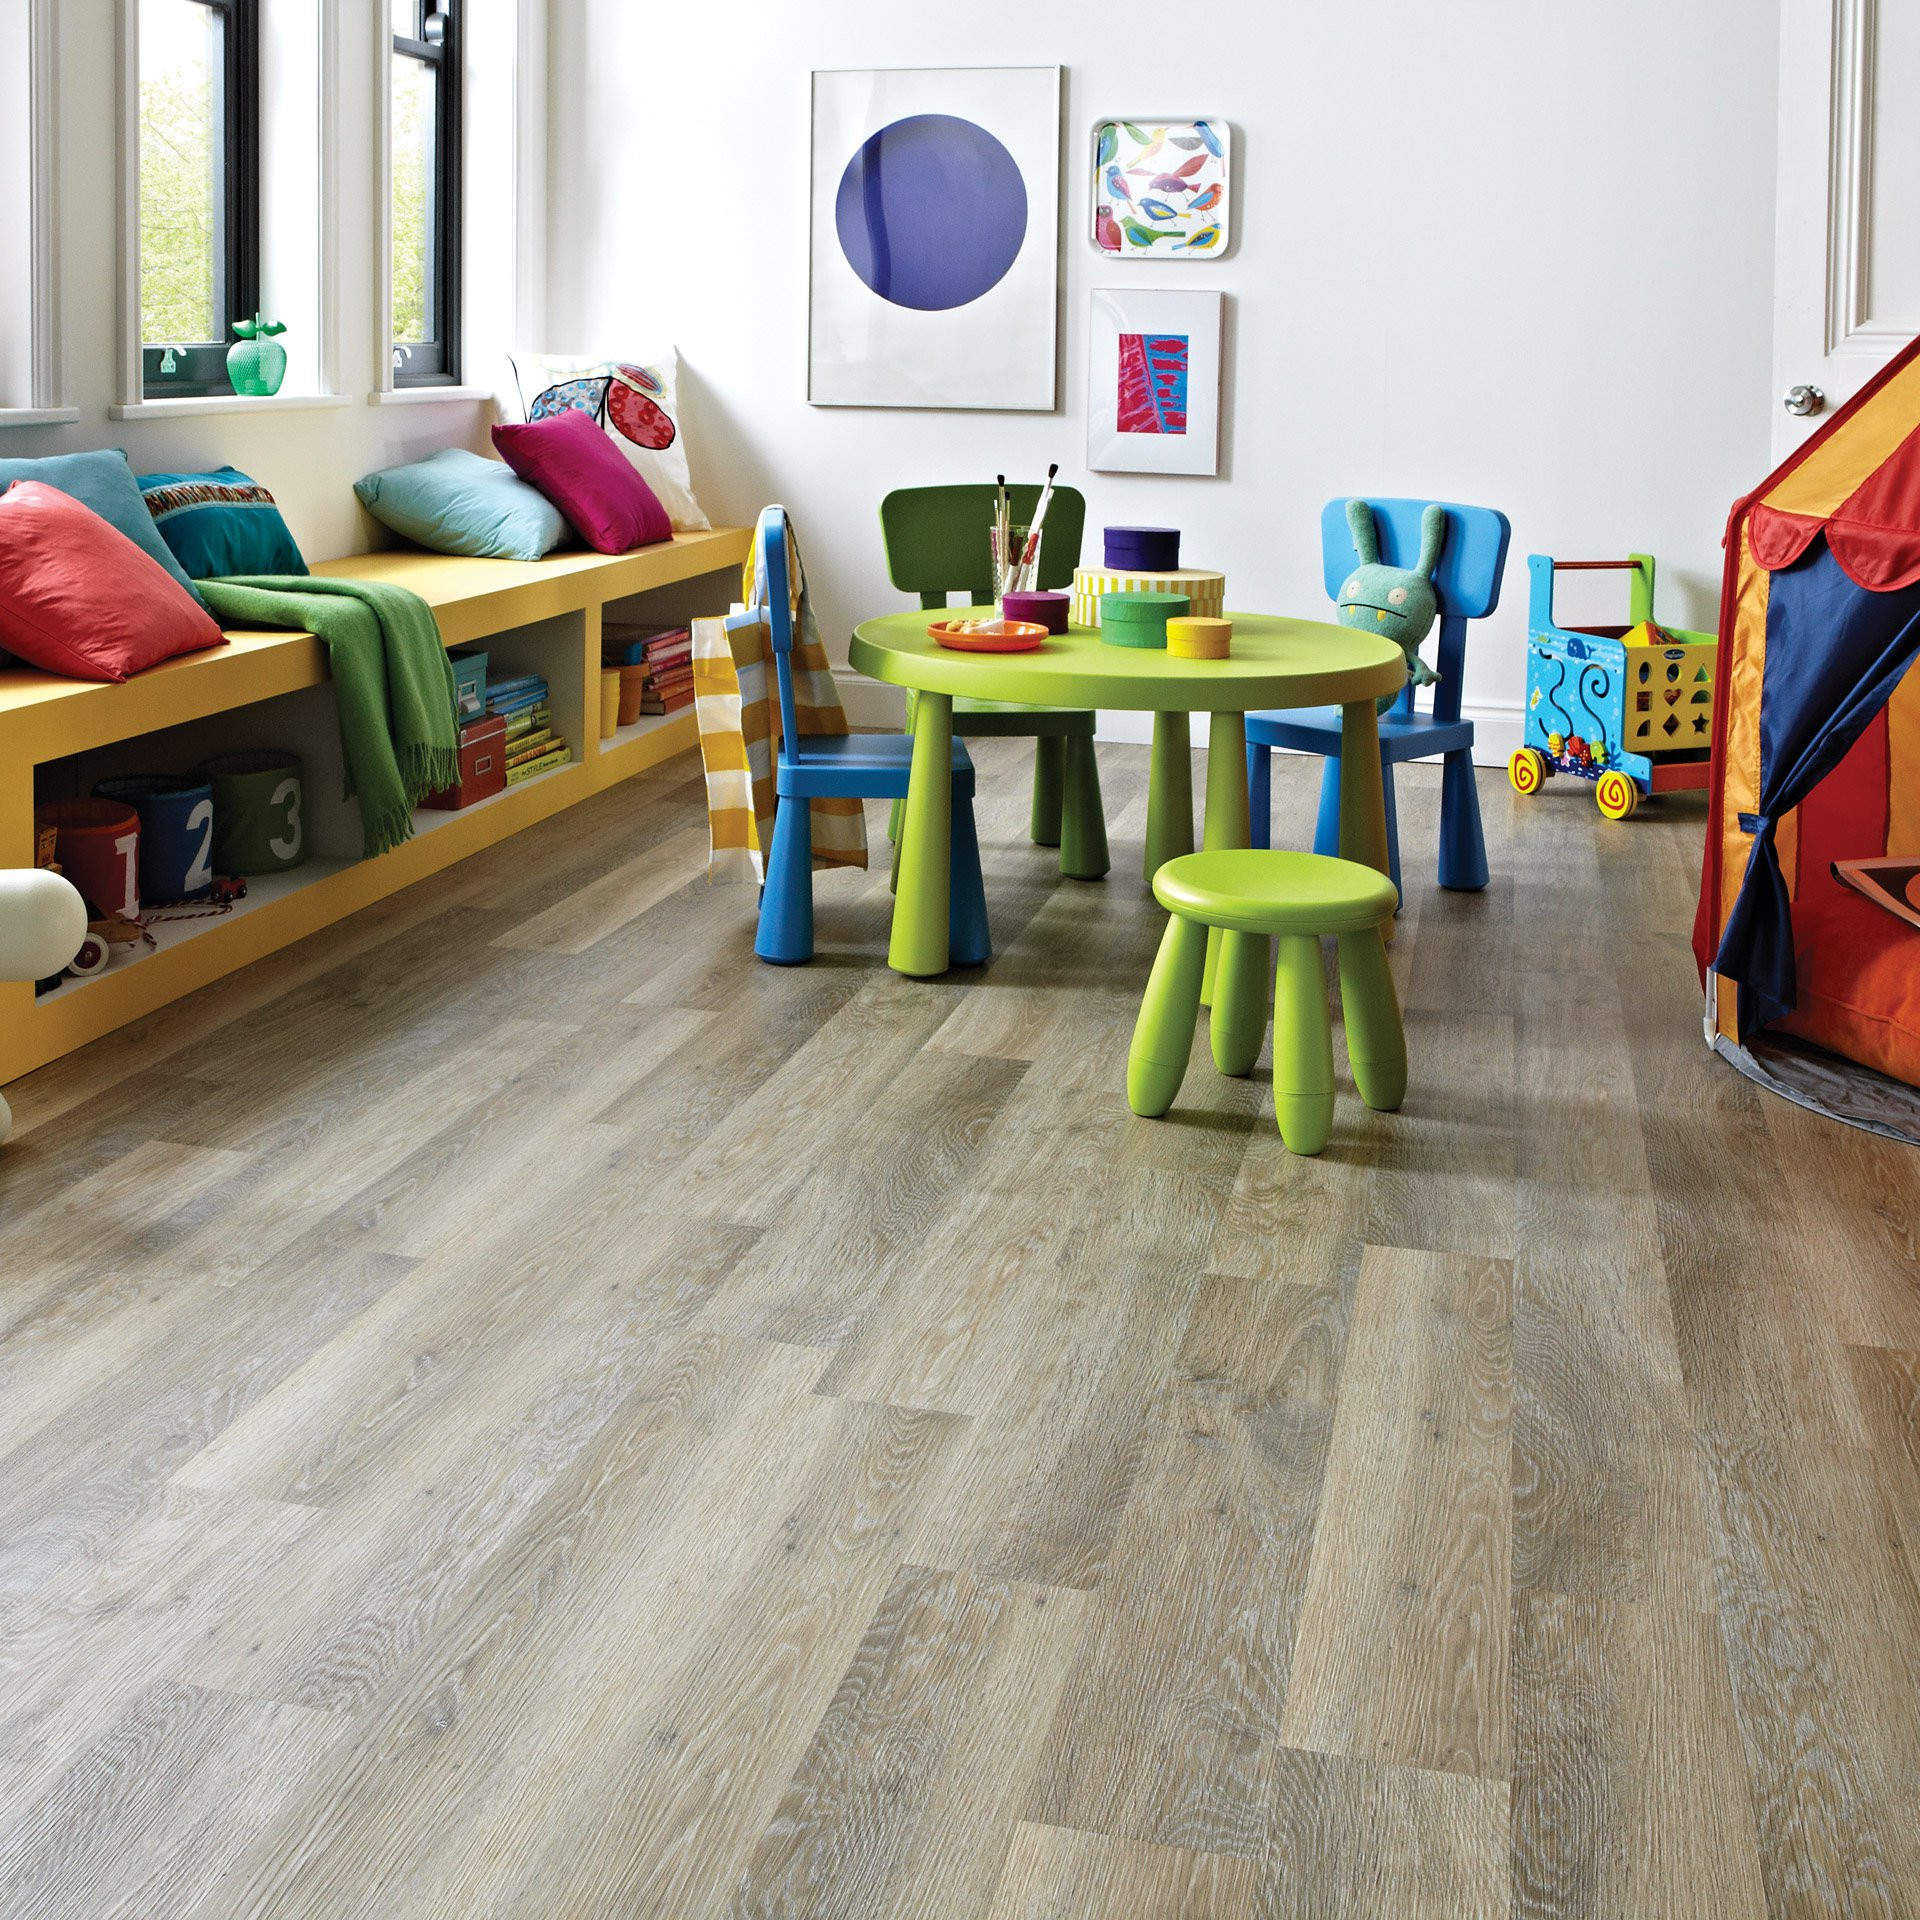 Carpet Tiles For Kids Room
 Kids Room Flooring Ideas for Your Home